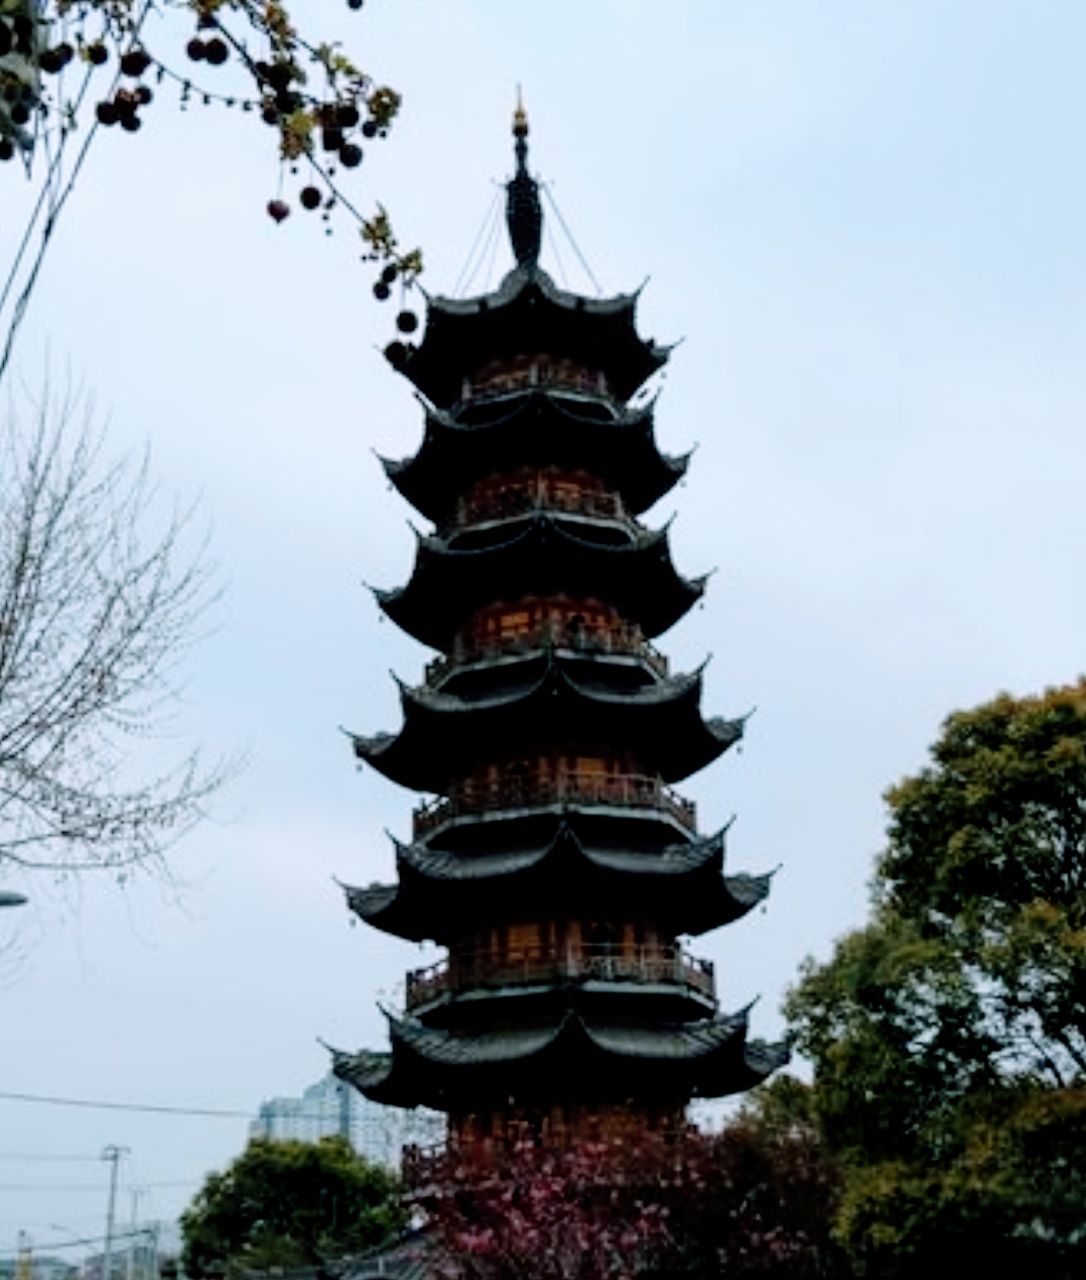 【携程攻略】上海龙华寺景点,龙华寺——上海著名古寺；龙华塔——上海著名古塔。每年龙华寺有敲钟…